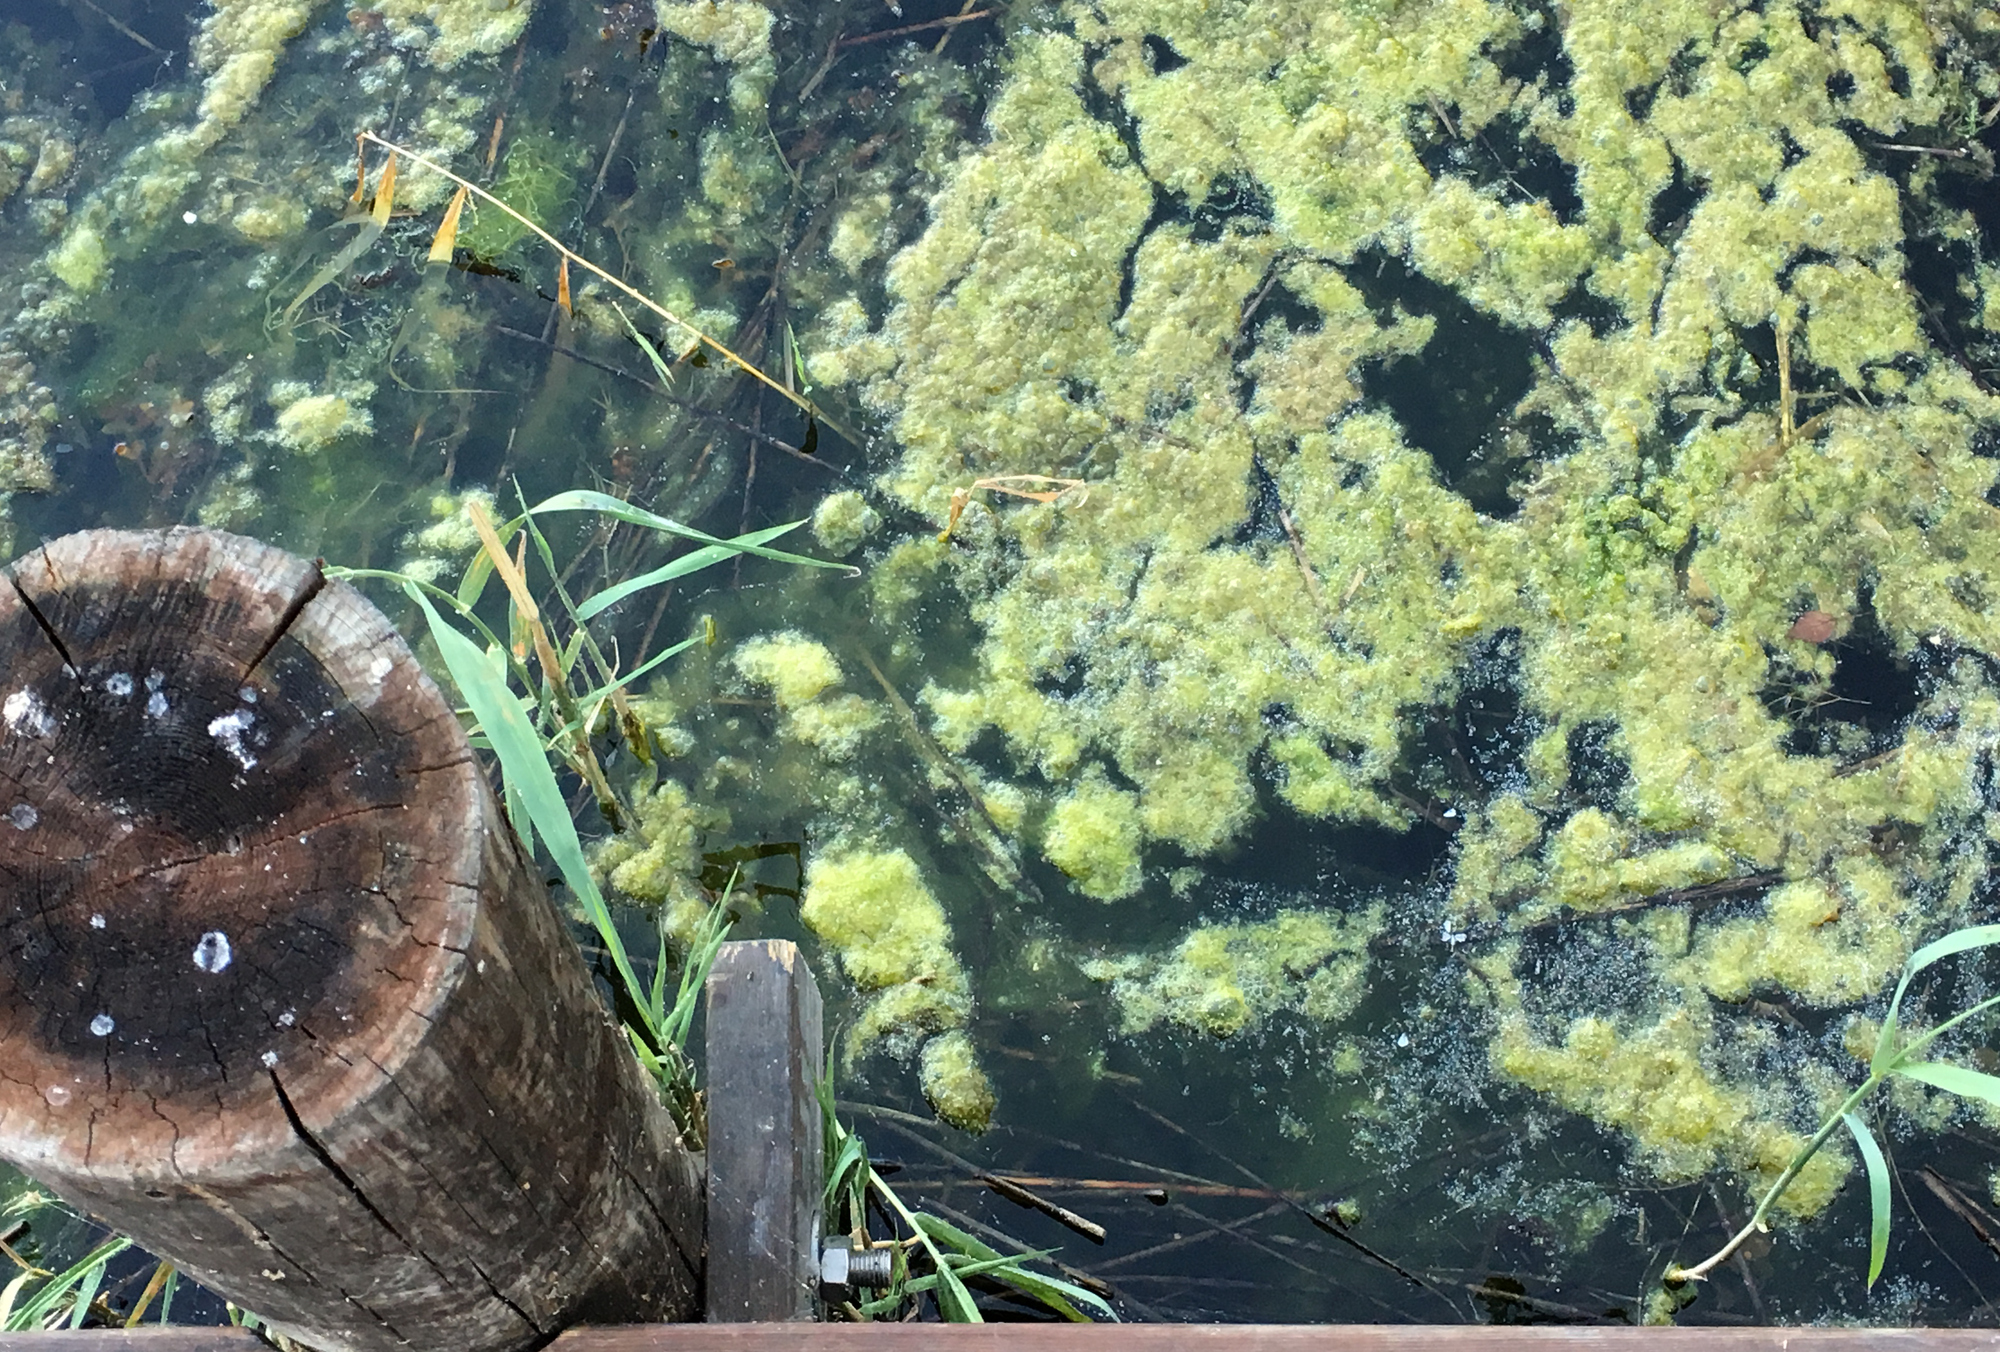 Övergödningen, som skapar algblomning och syrefria döda bottnar, är ett av Östersjöns största miljöproblem. Foto: Monica Forsell/HaV